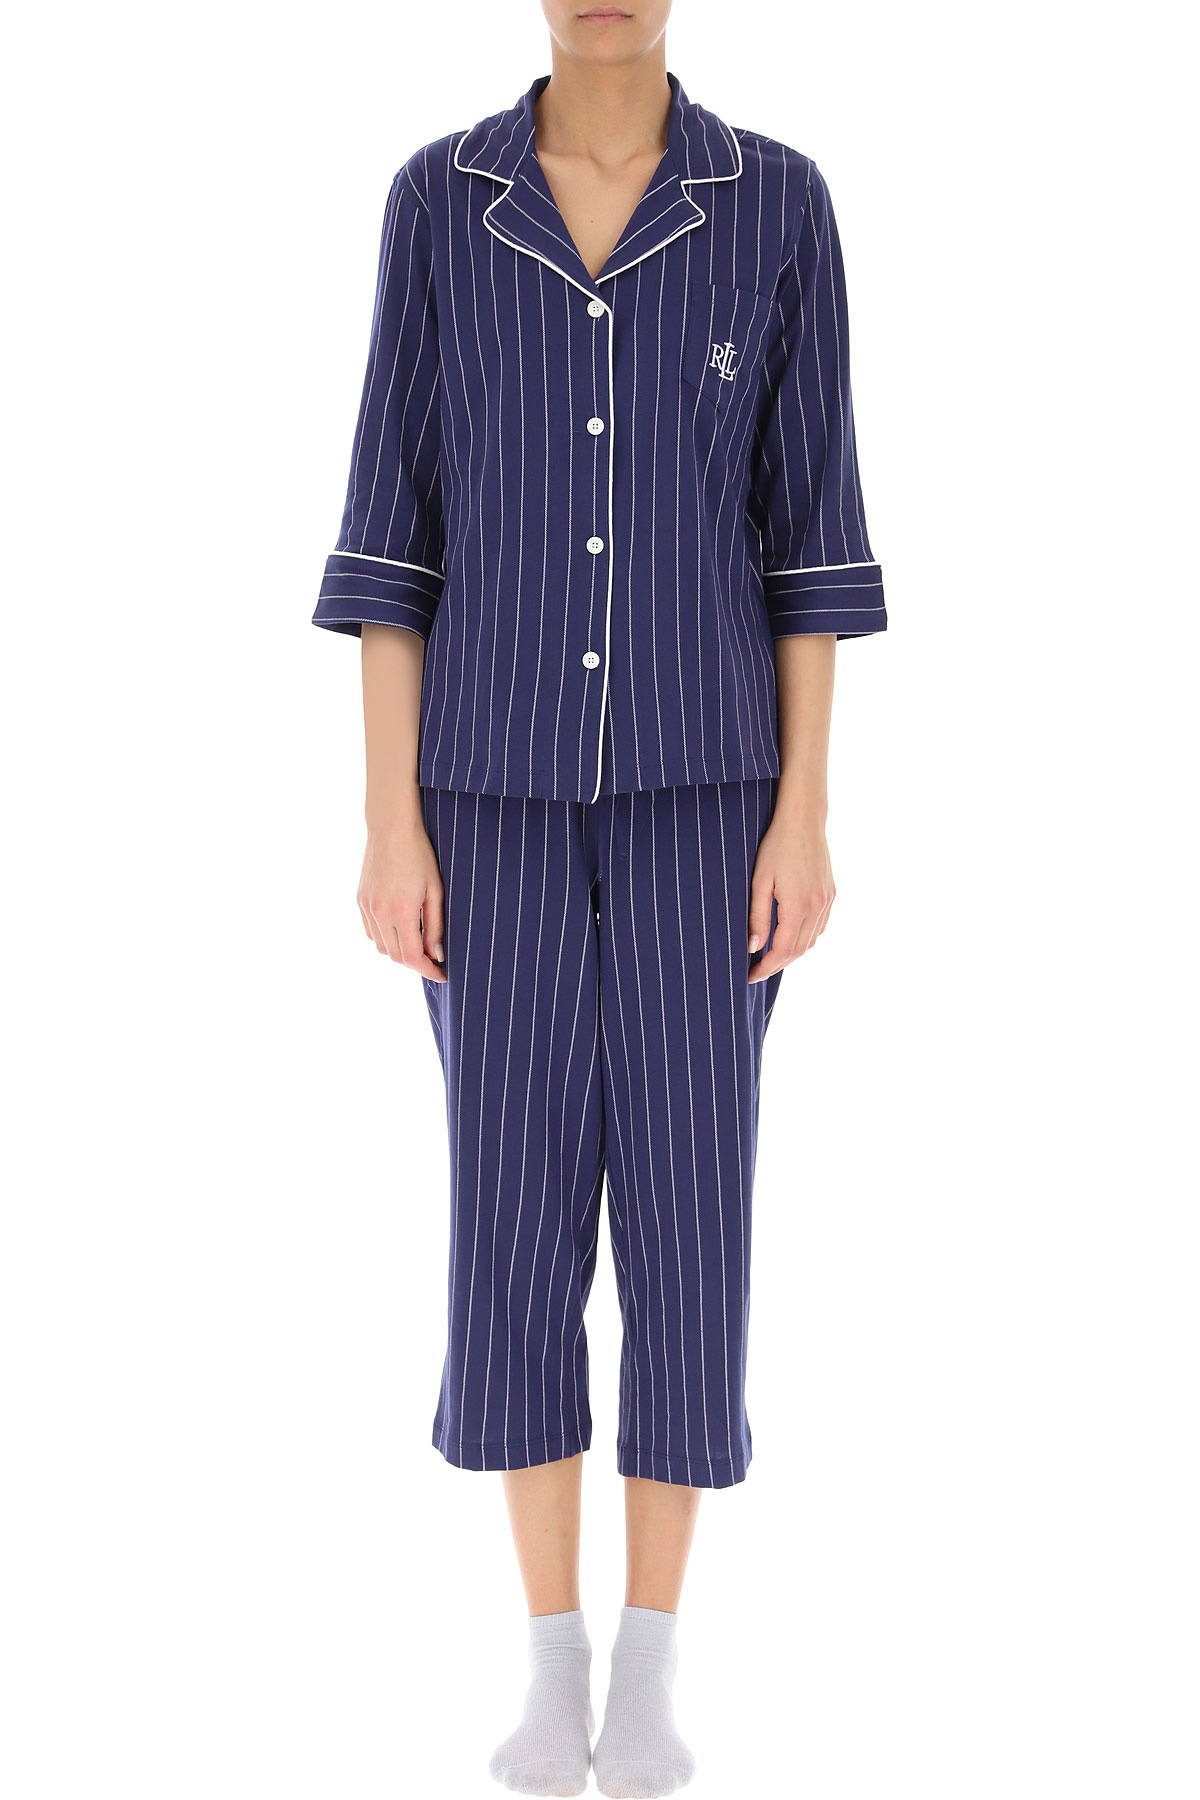 Трикотажная пижама (жакет, бриджи) I819702 полоска Ralph Lauren рис. 1